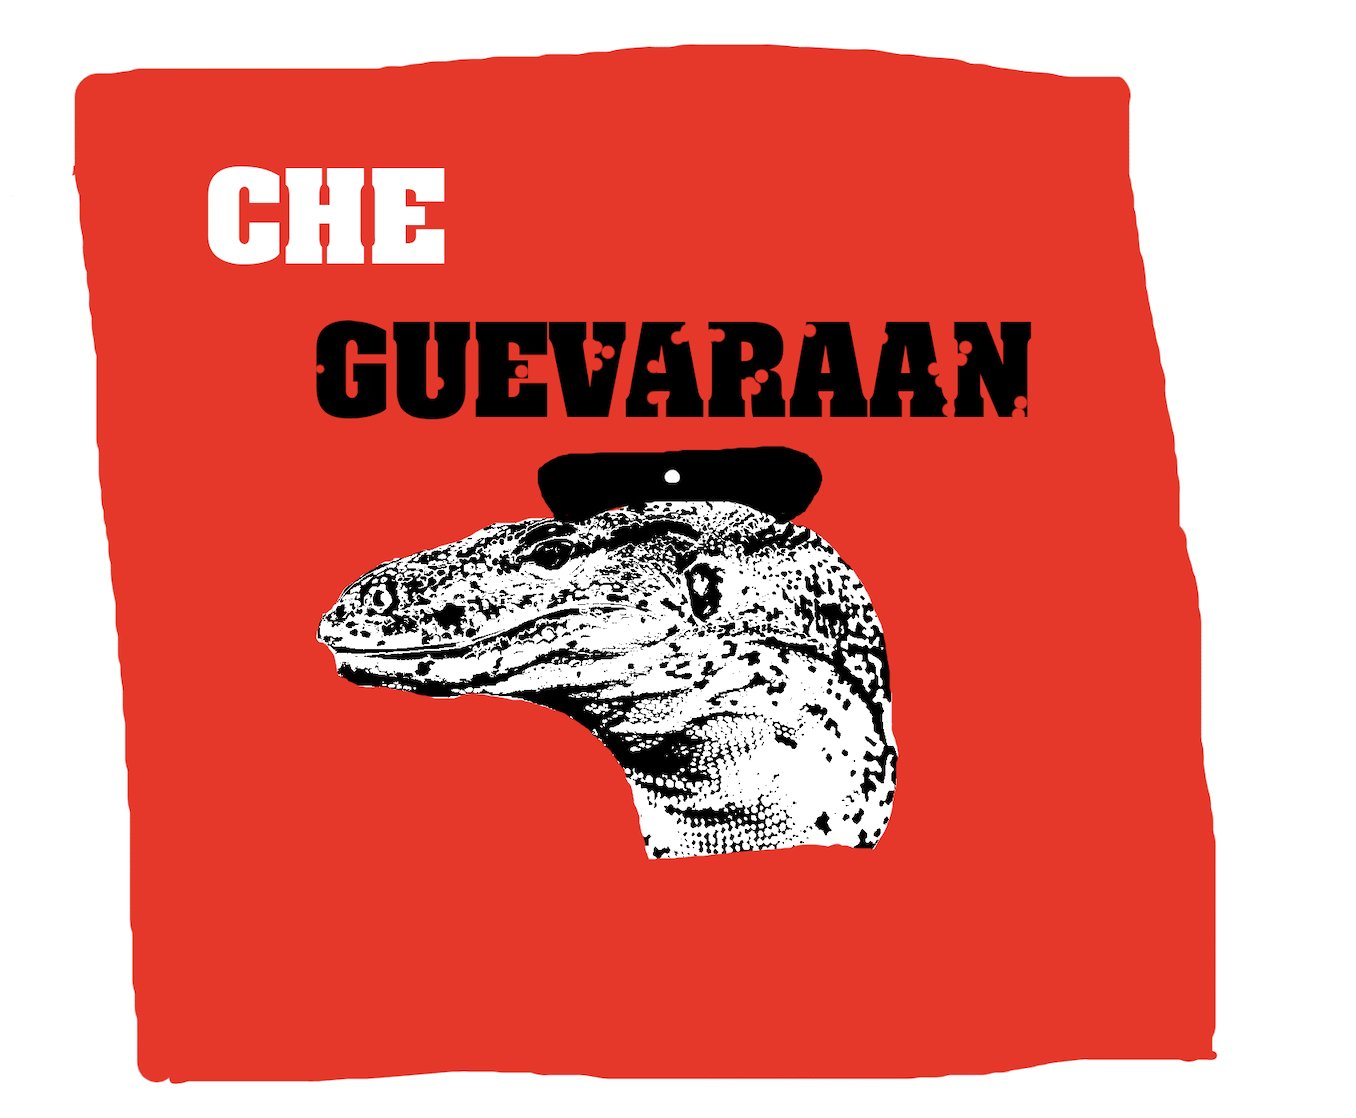 Che Guevaraan